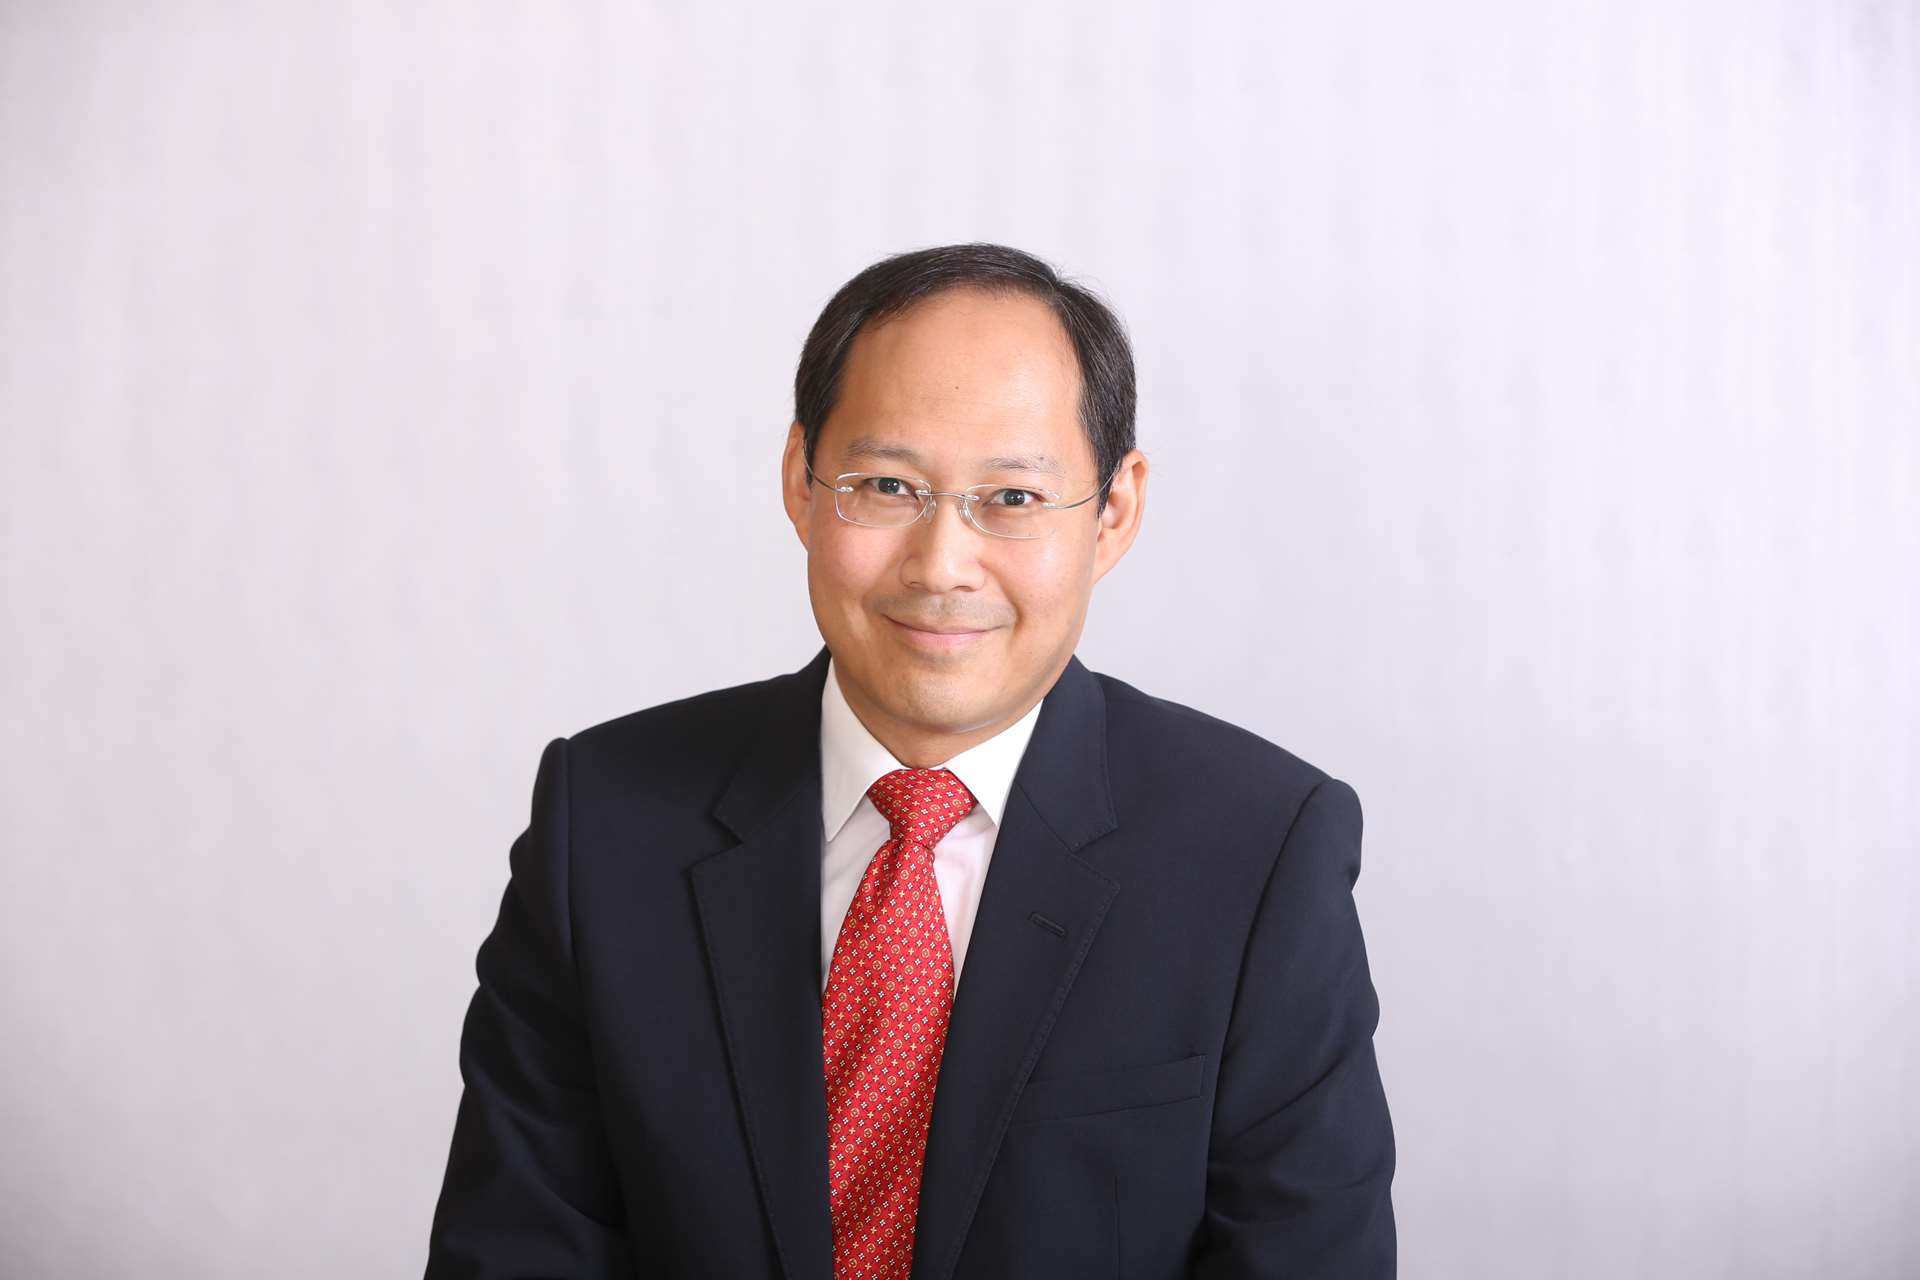 David Lai